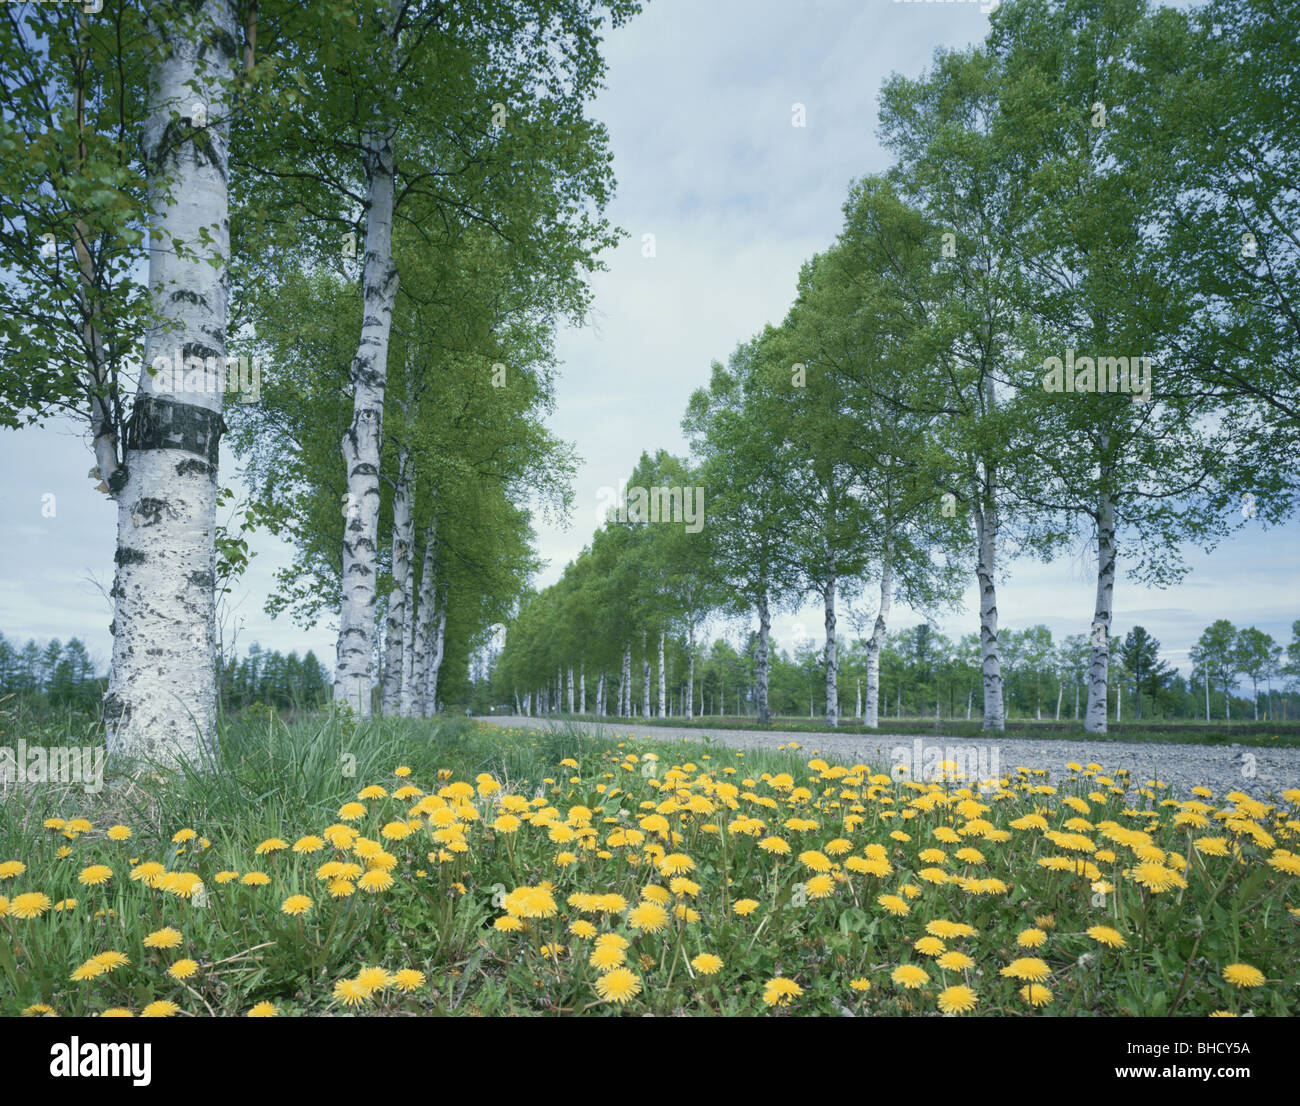 Il tarassaco cresce accanto a strade orlate da alberi, Shihoro, Hokkaido, Giappone Foto Stock